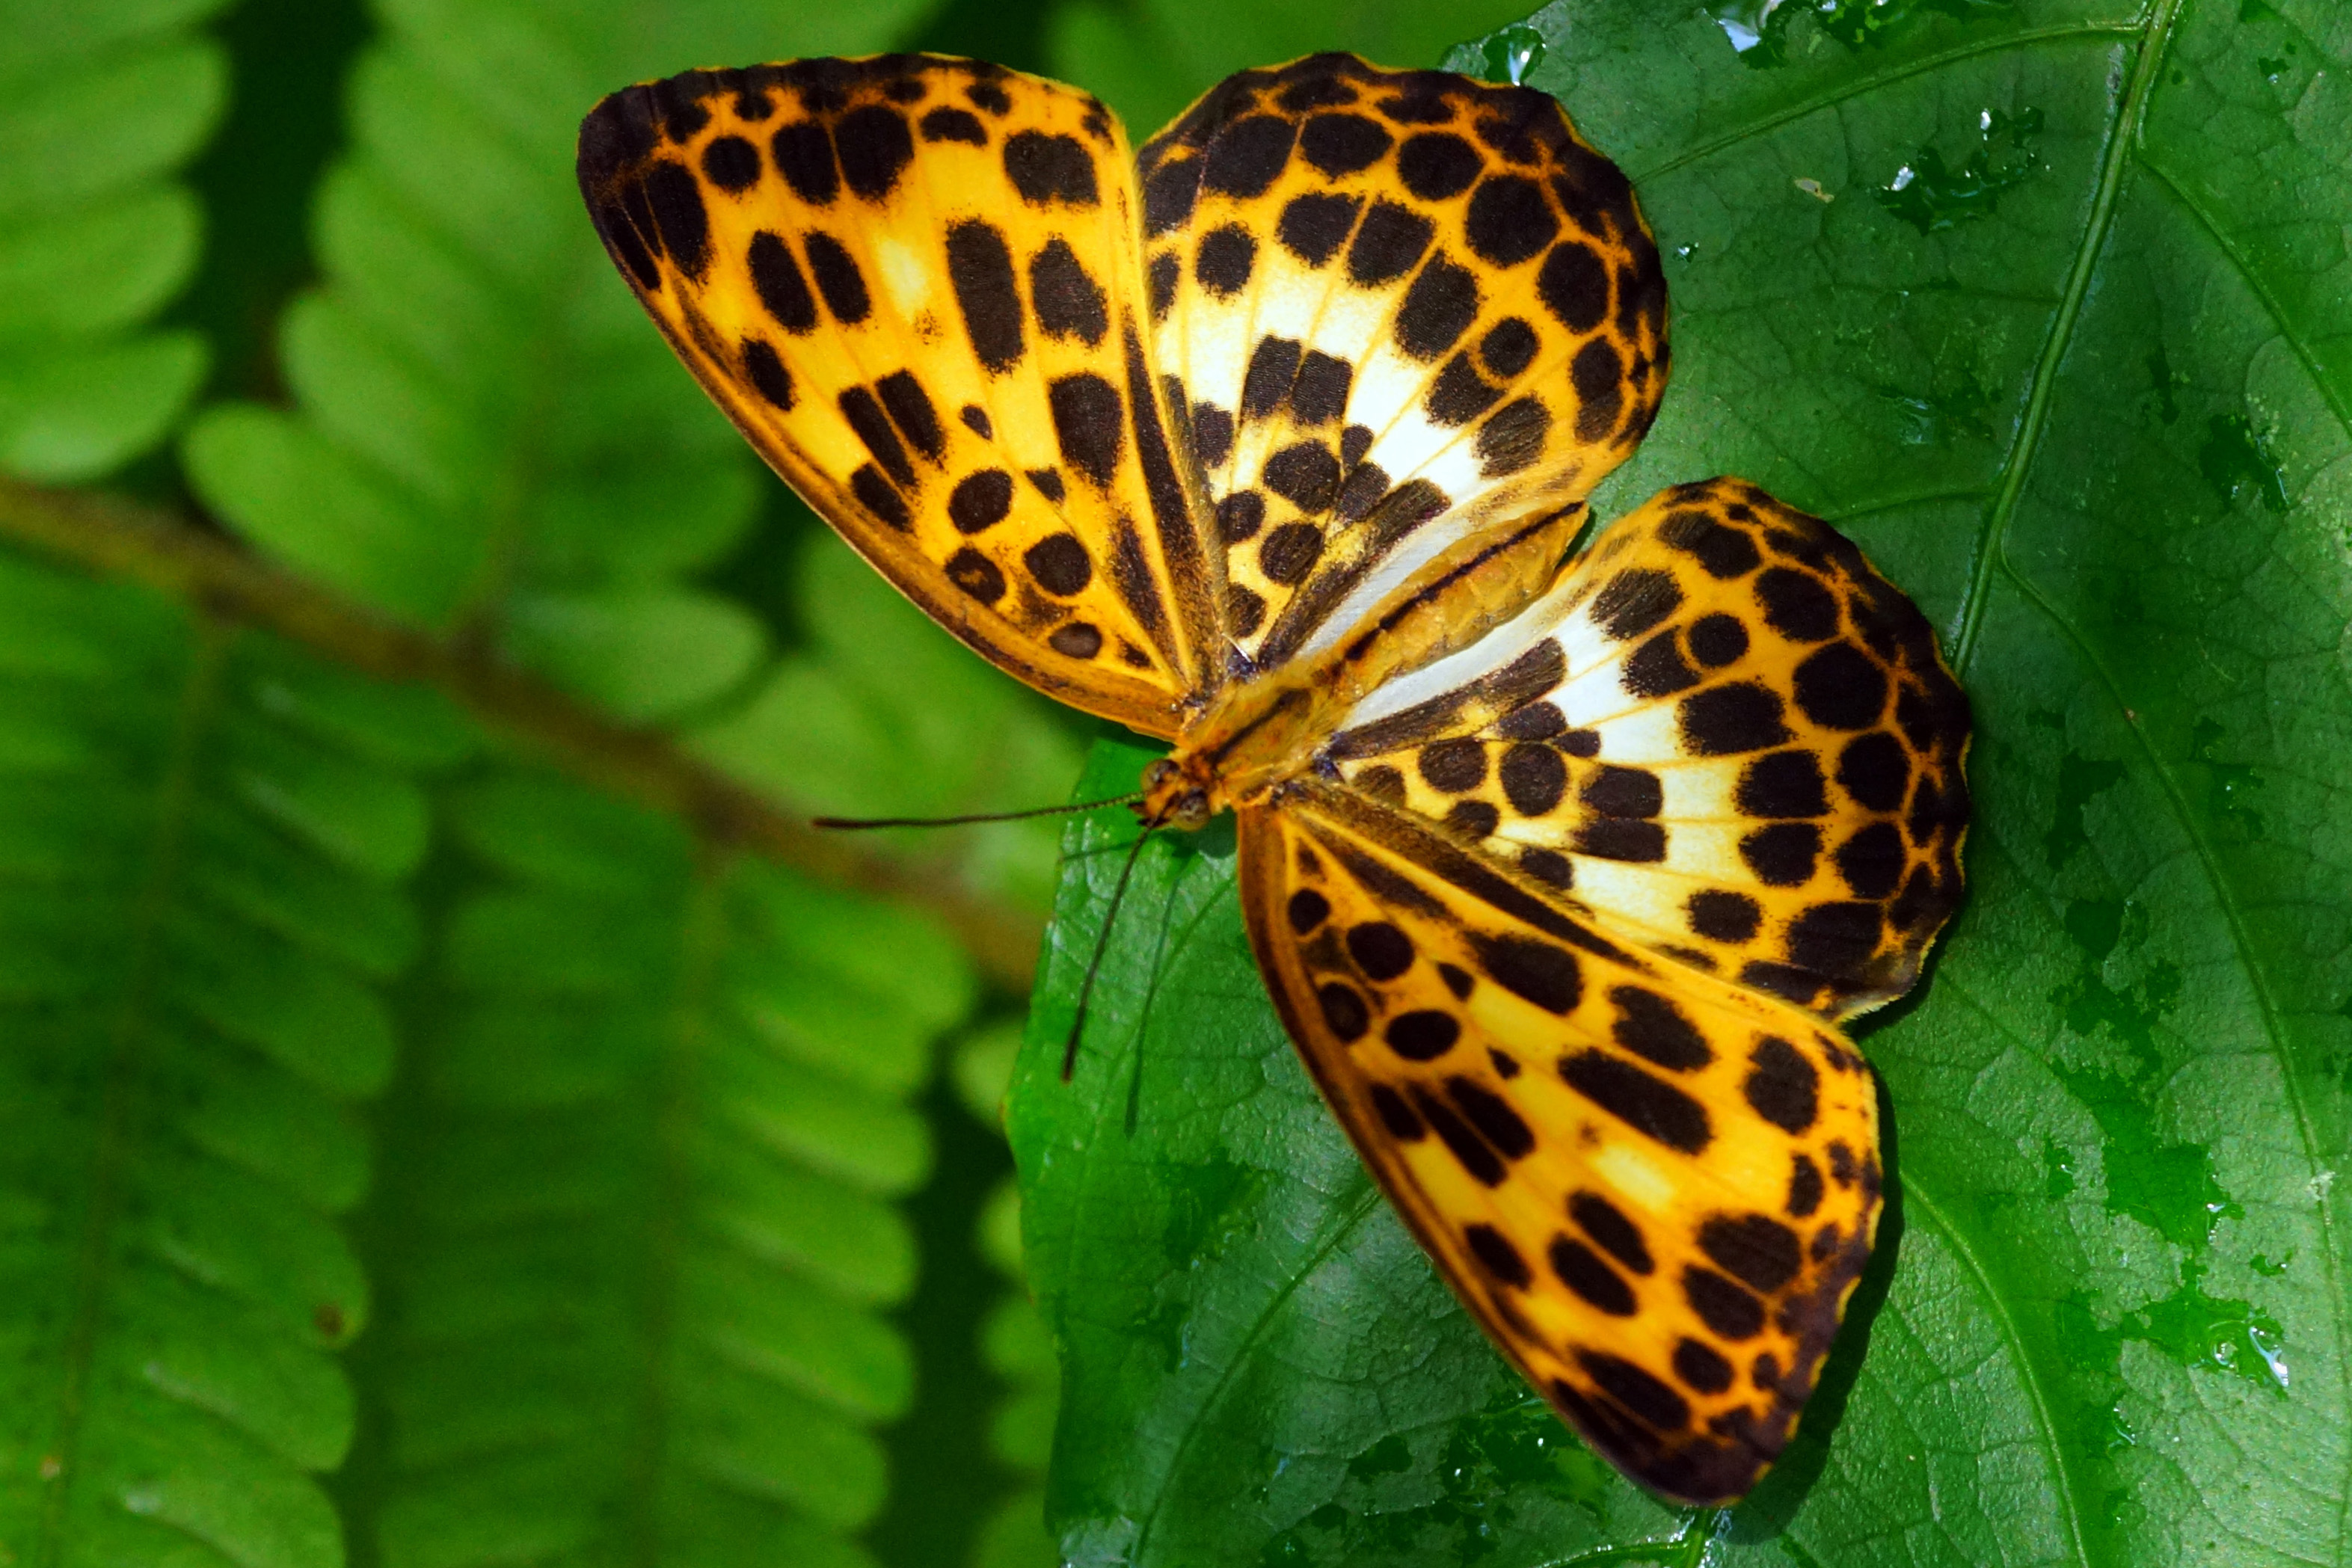 Bestellmich Lila Elfe Schmetterling Aufnäher Bügelbild Patch Applikation Größe 7,2 x 10,5 cm